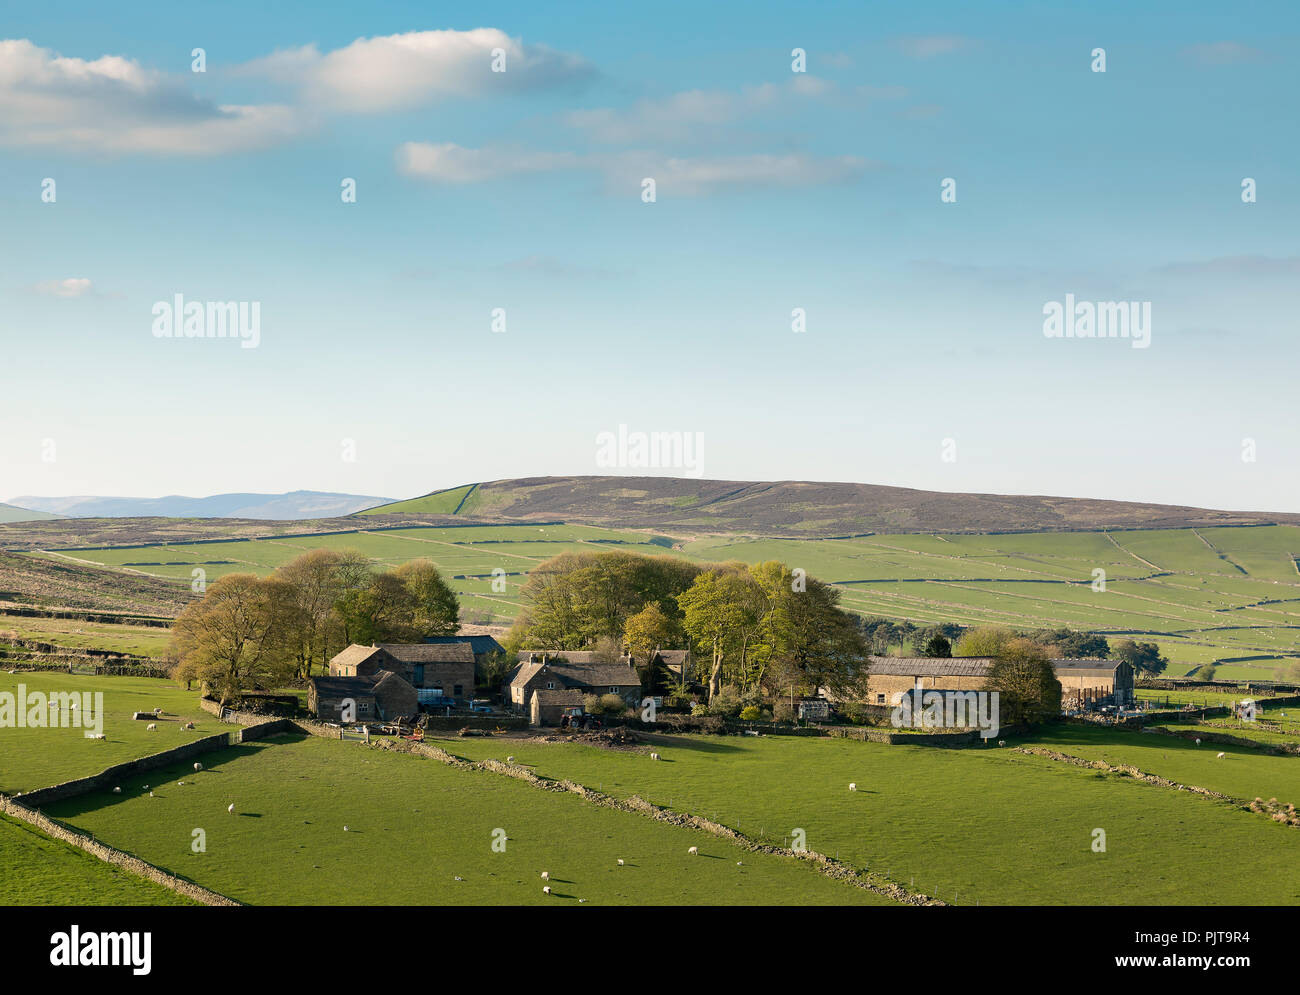 Ein Bild von landwirtschaftlichen Gebäuden in der High Peak District von Derbyshire, England, UK. Stockfoto